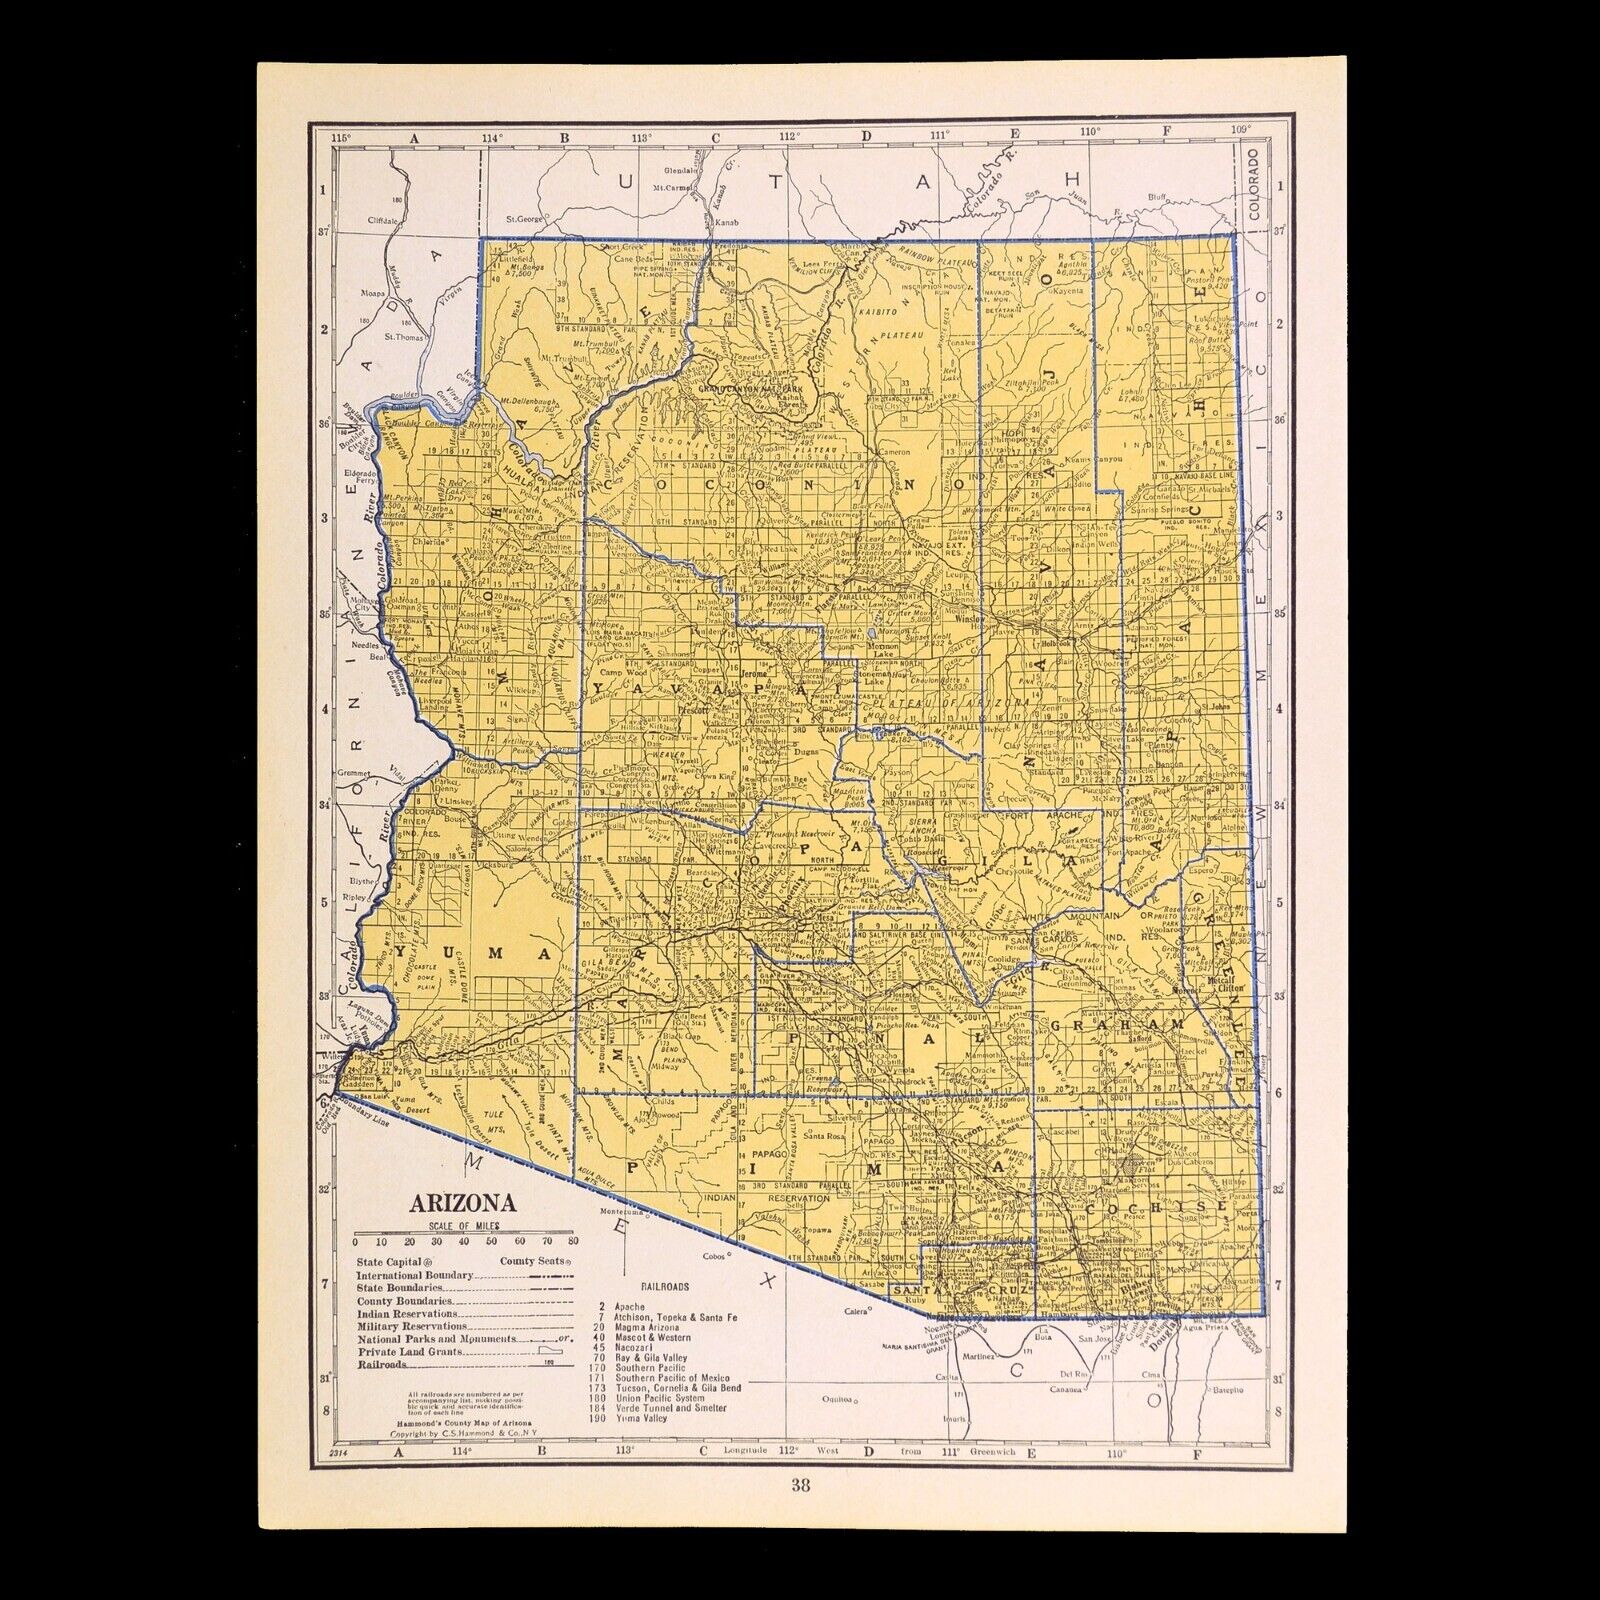 ca1939 ARIZONA Railroad Map Depot Towns SP RR Historic Original Atlas Map